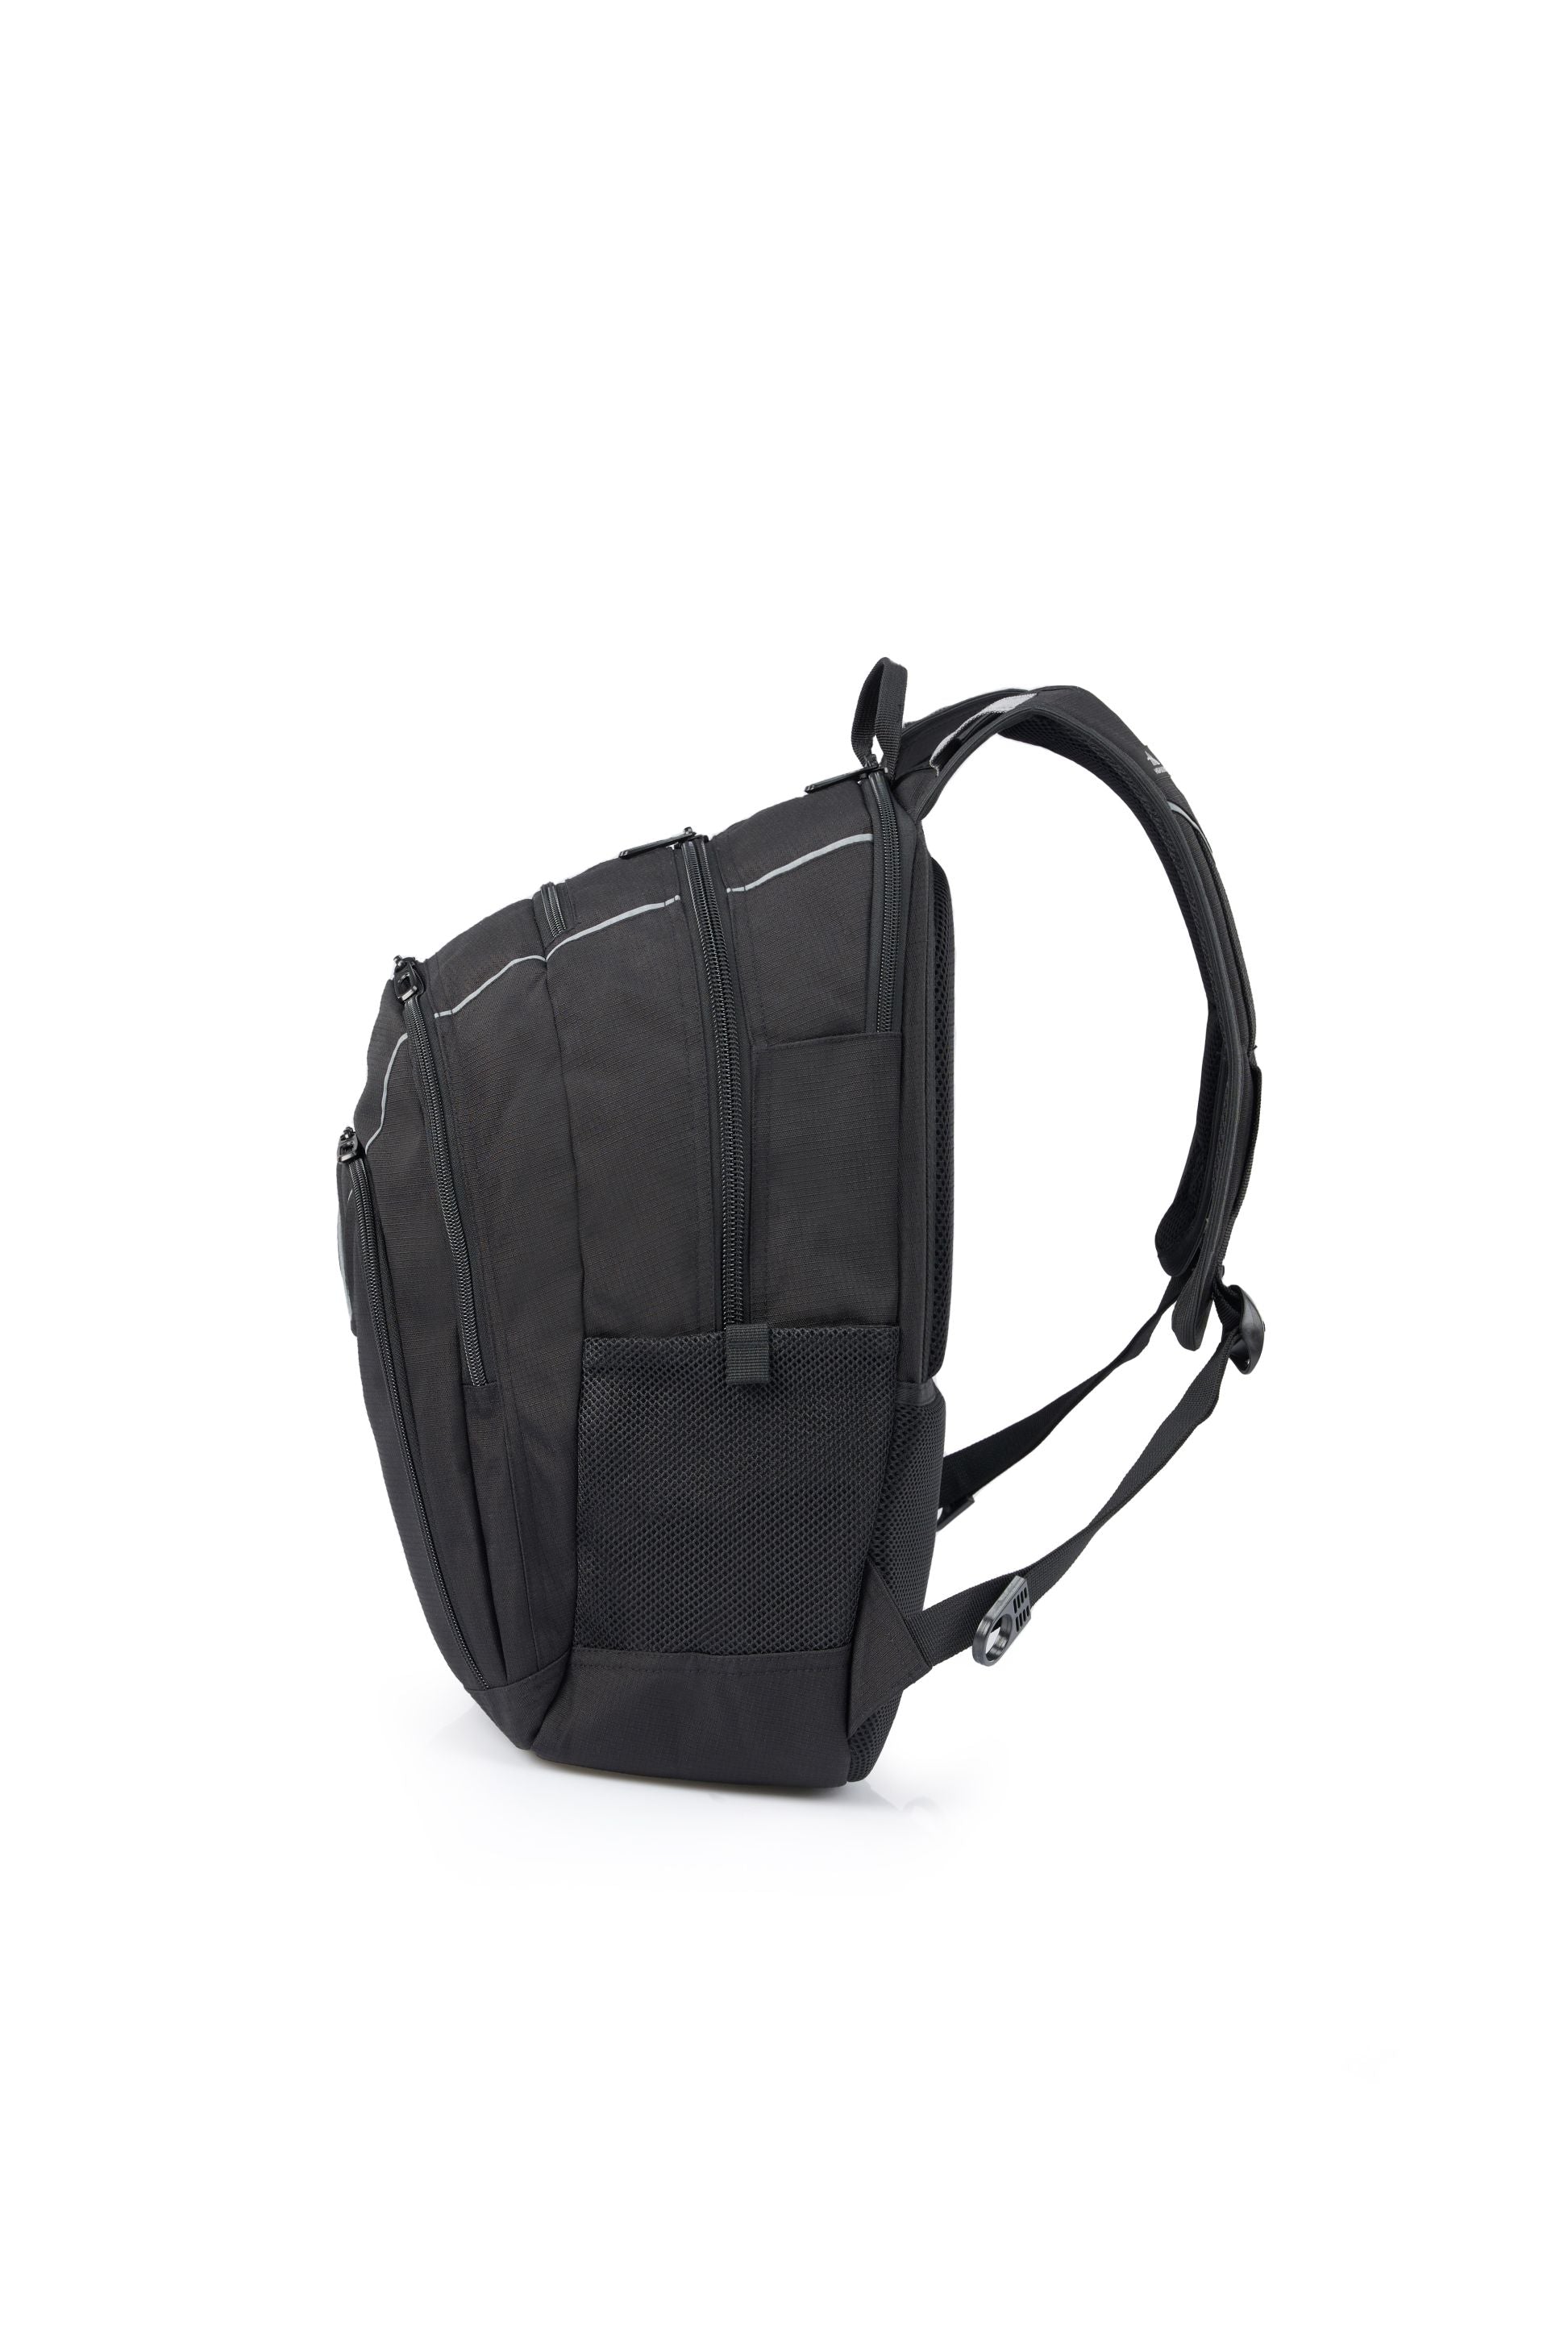 High Sierra - Academy 3.0 Backpack Eco - Black-3